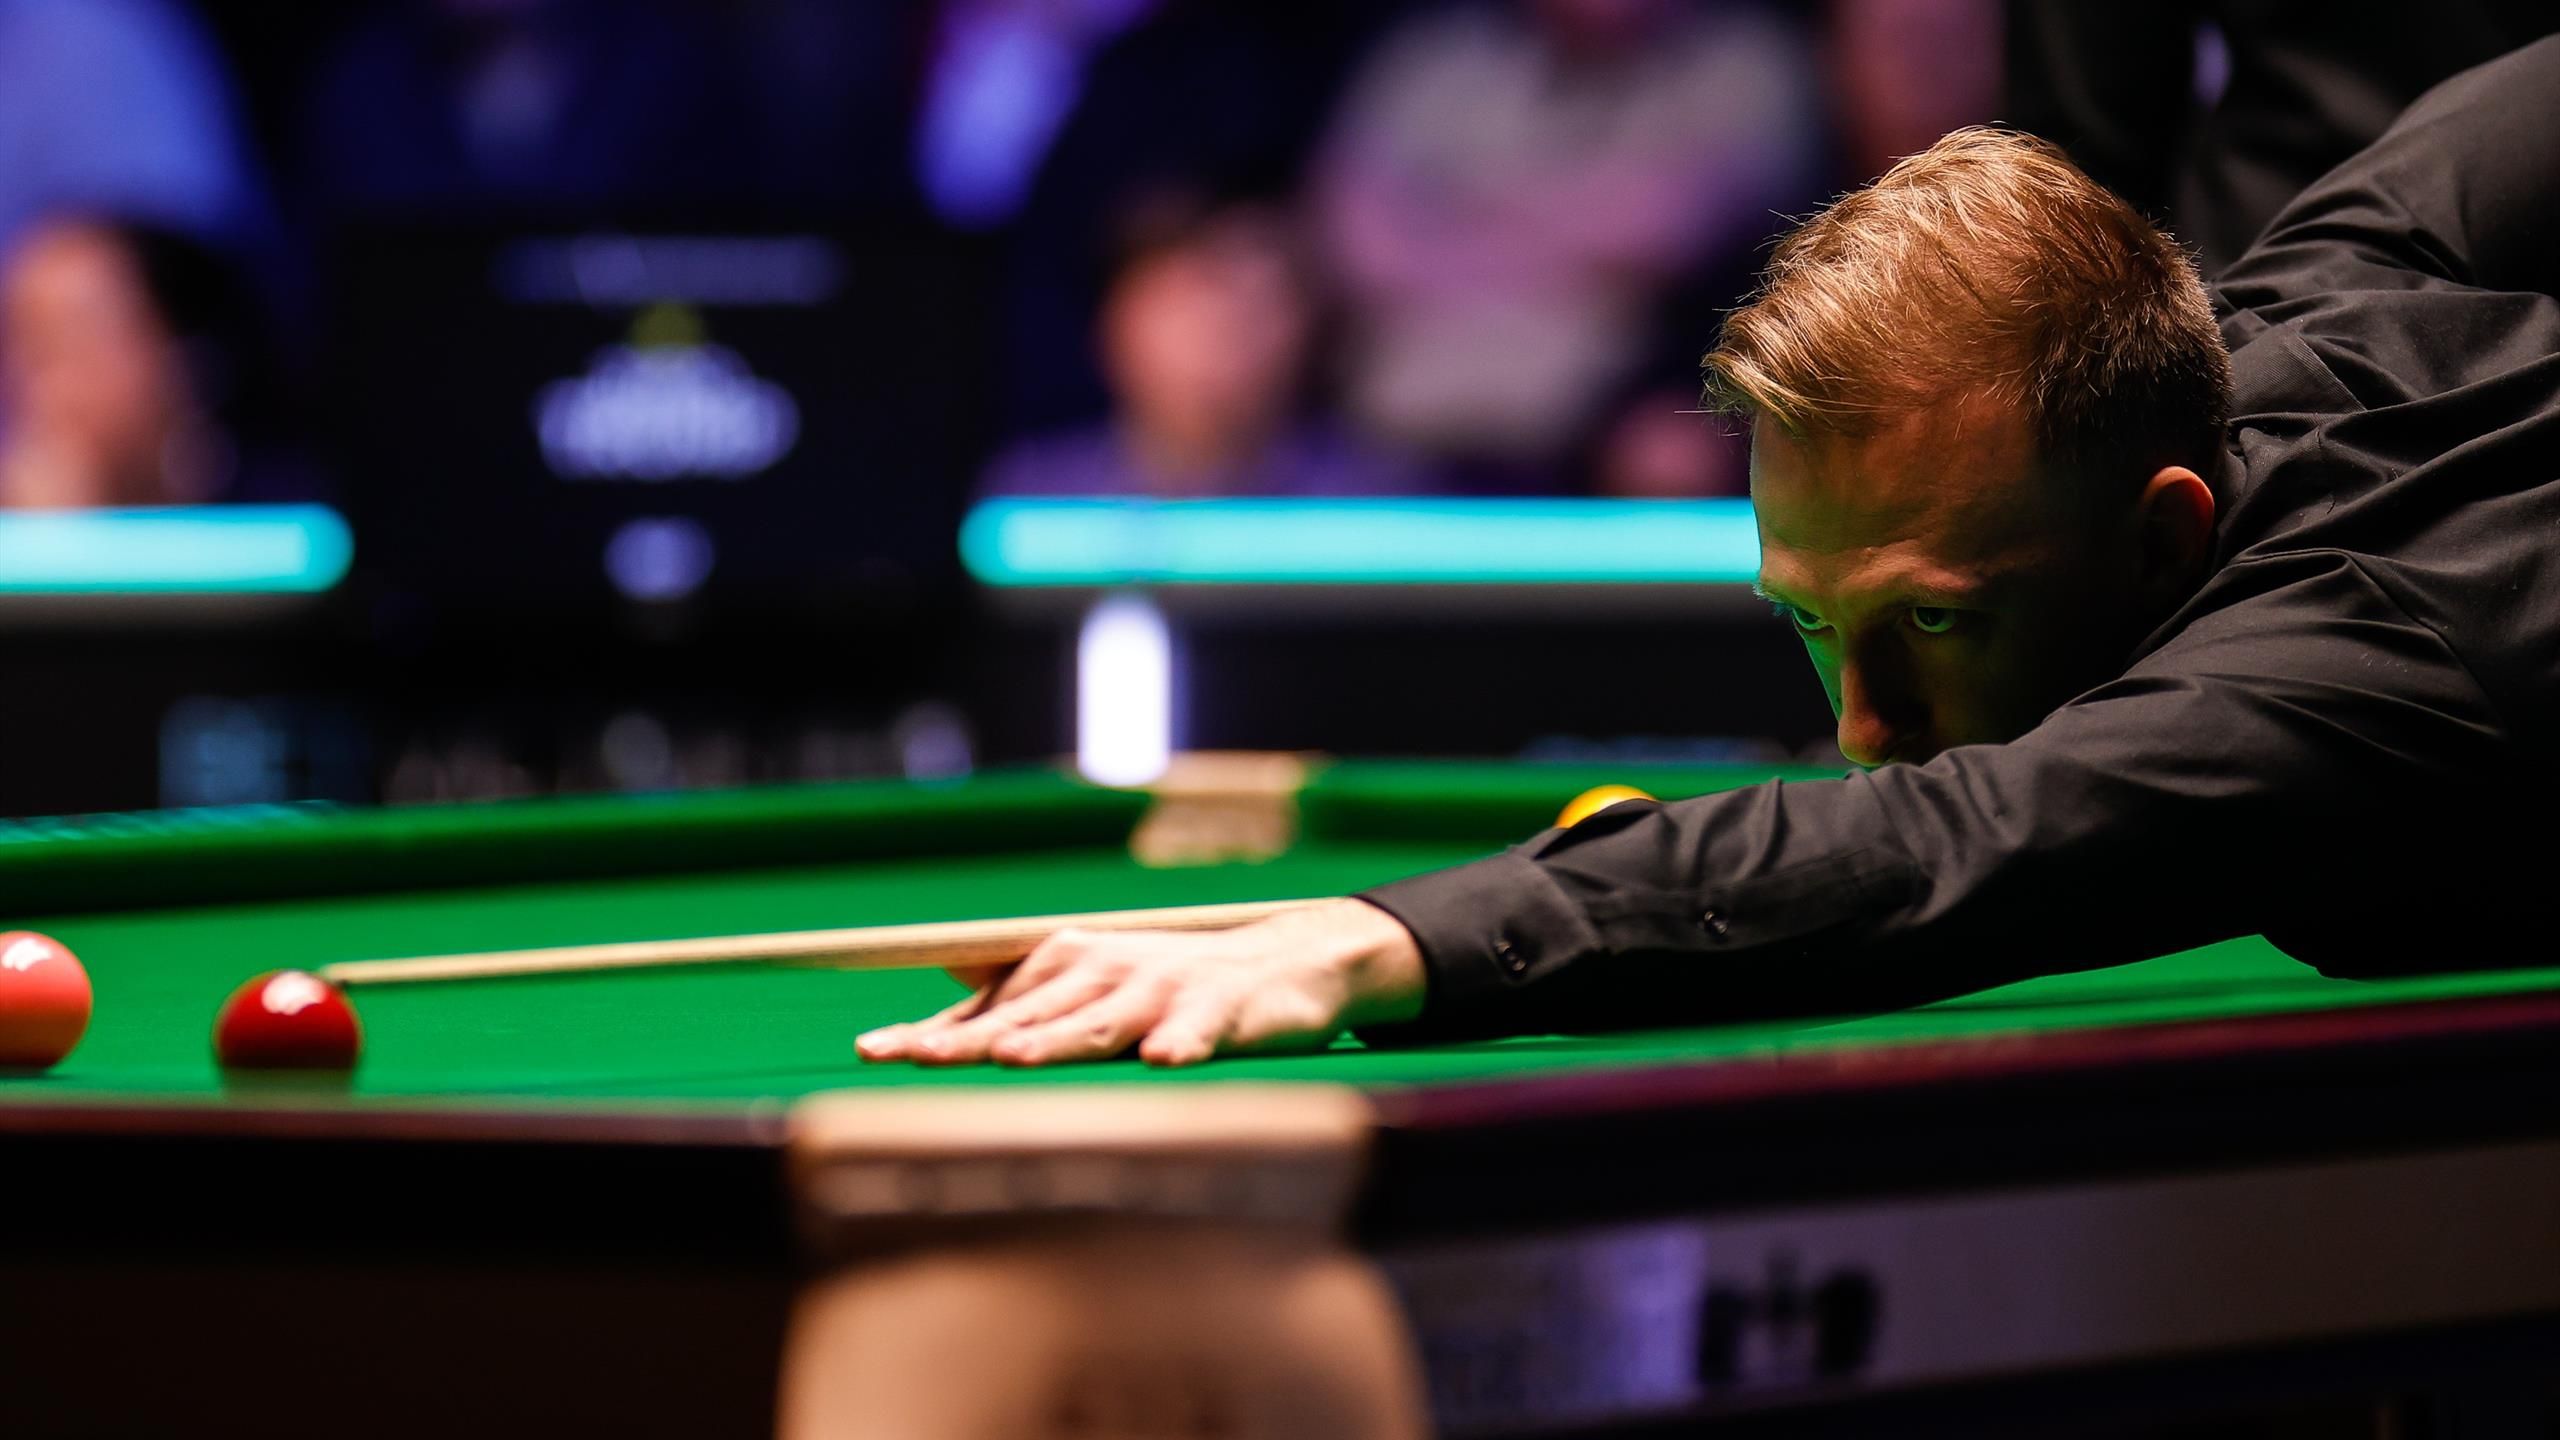 Northern Ireland Open Judd Trump spielt gegen Saengkham im vierten Frame ein Century Break zum Ausgleich - Snooker Video